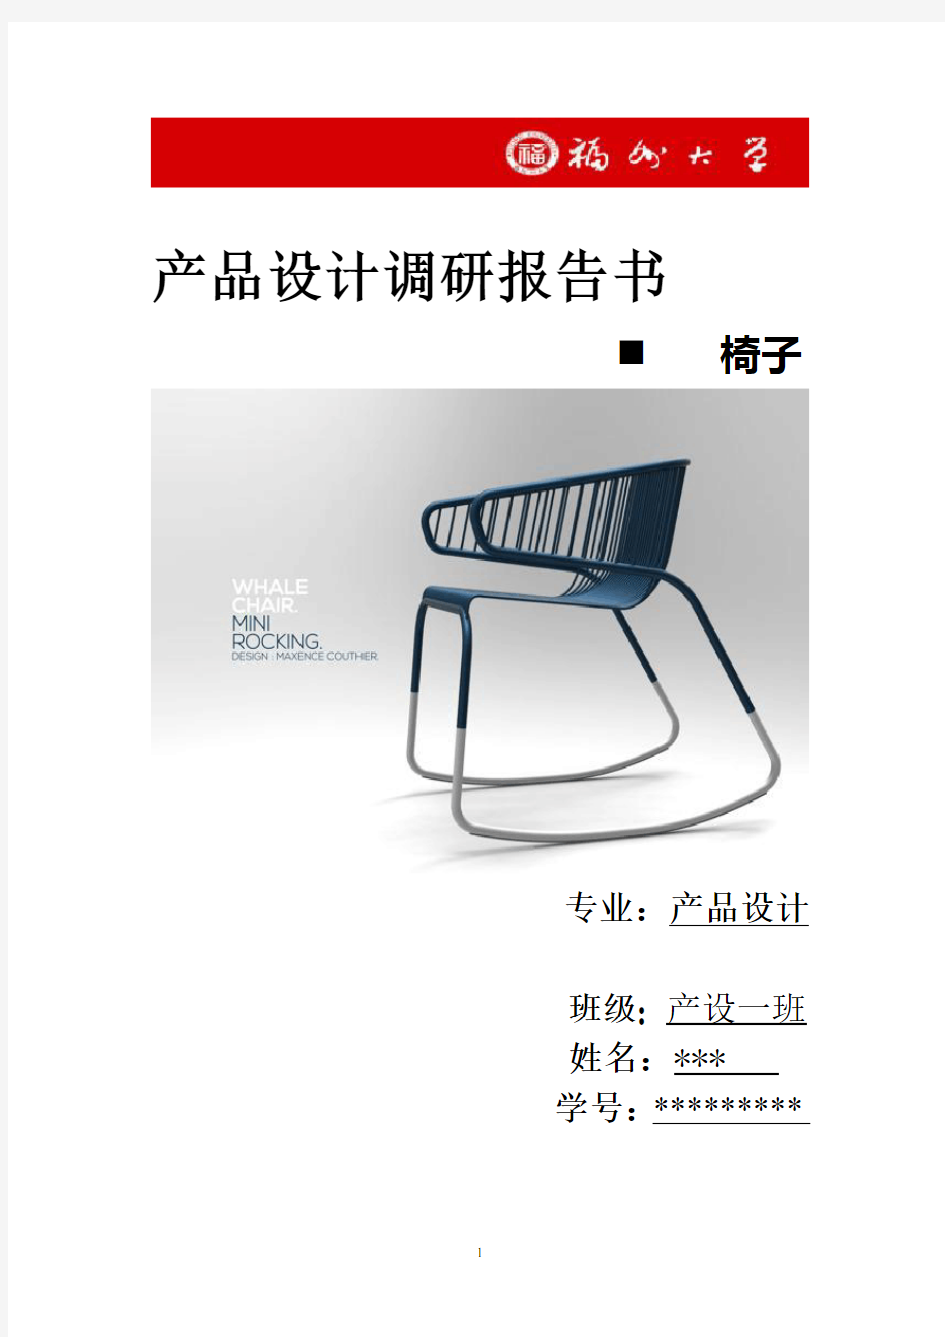 椅子设计调研报告  刘方博171309043